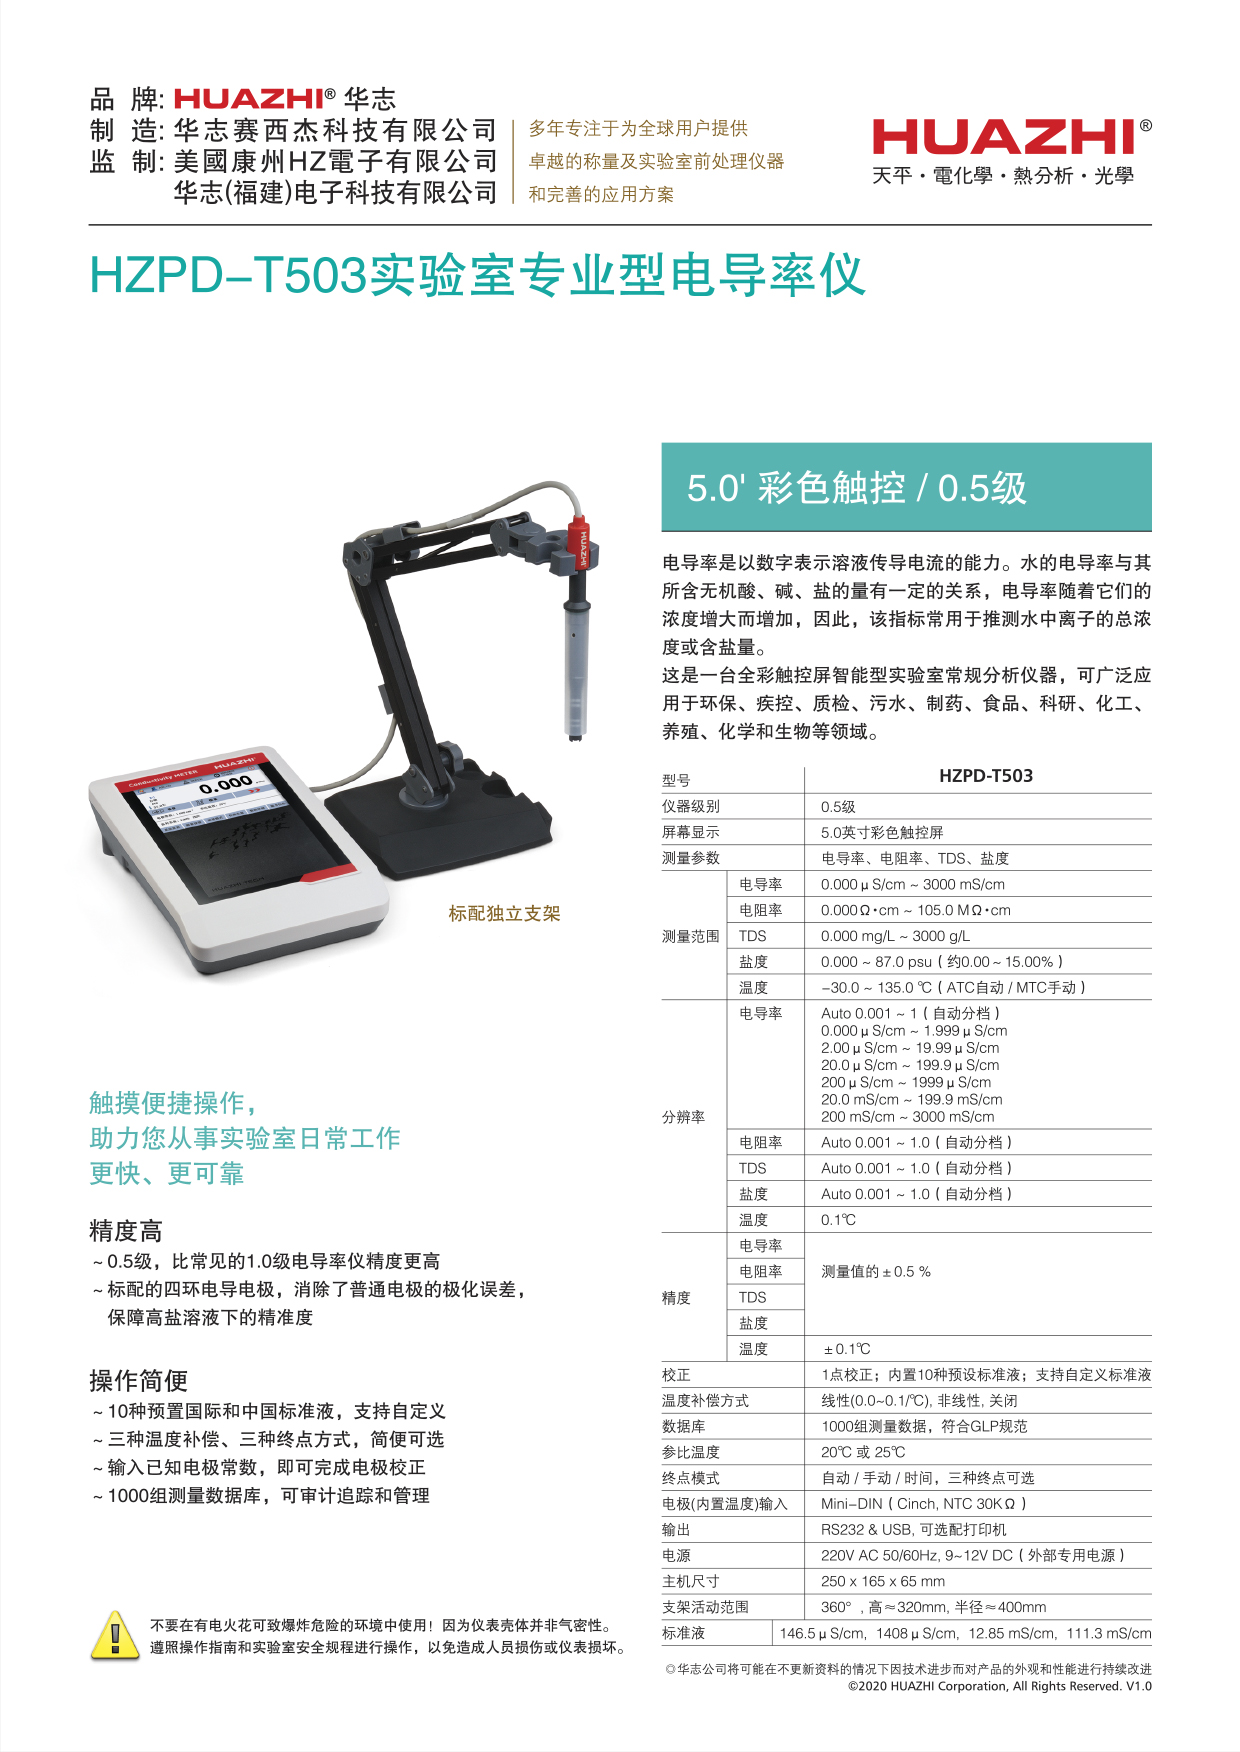 HZPD-T503電導單機詳情(v1.0)2020.jpg